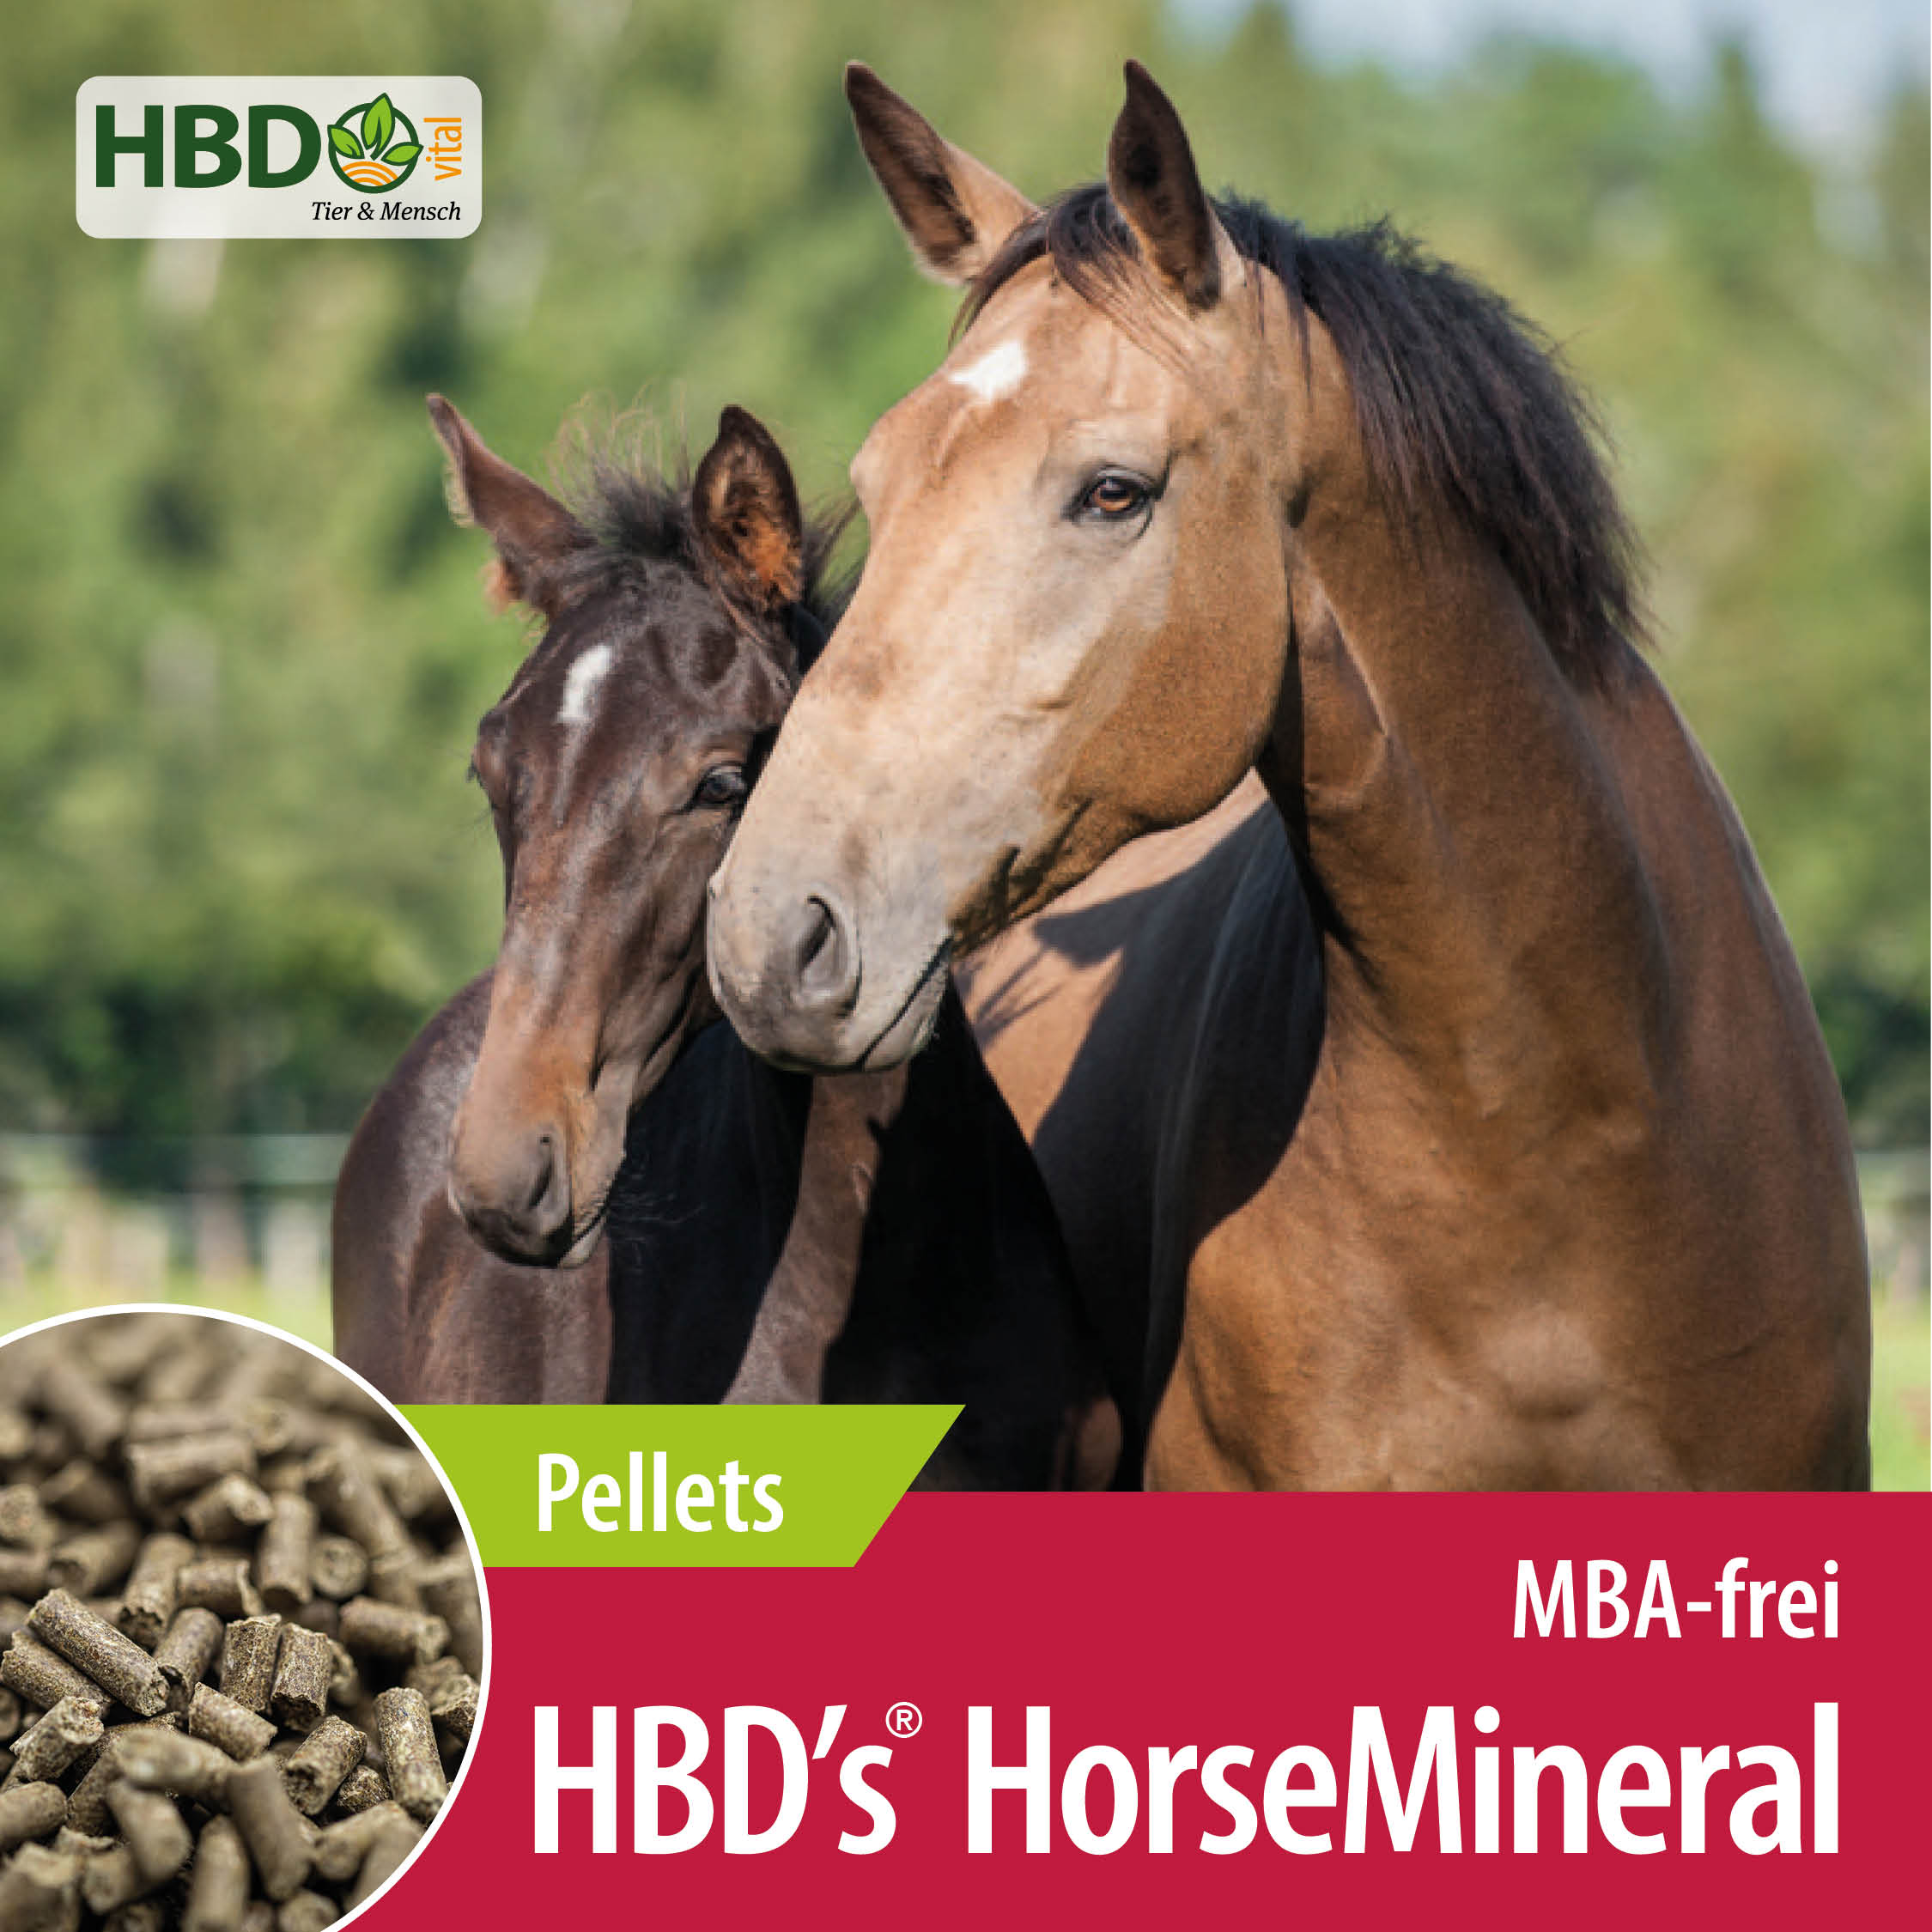 Shopbild für HBD’s HorseMineral MBA-frei Pellets - Das Bild zeigt den Produktnamen sowie den Hinweis, dass es sich um Melasse-, Bierhefe- und Apfeltrester-freie Pellets handelt. Zwei Pferde sind zu sehen, eines hellbrau